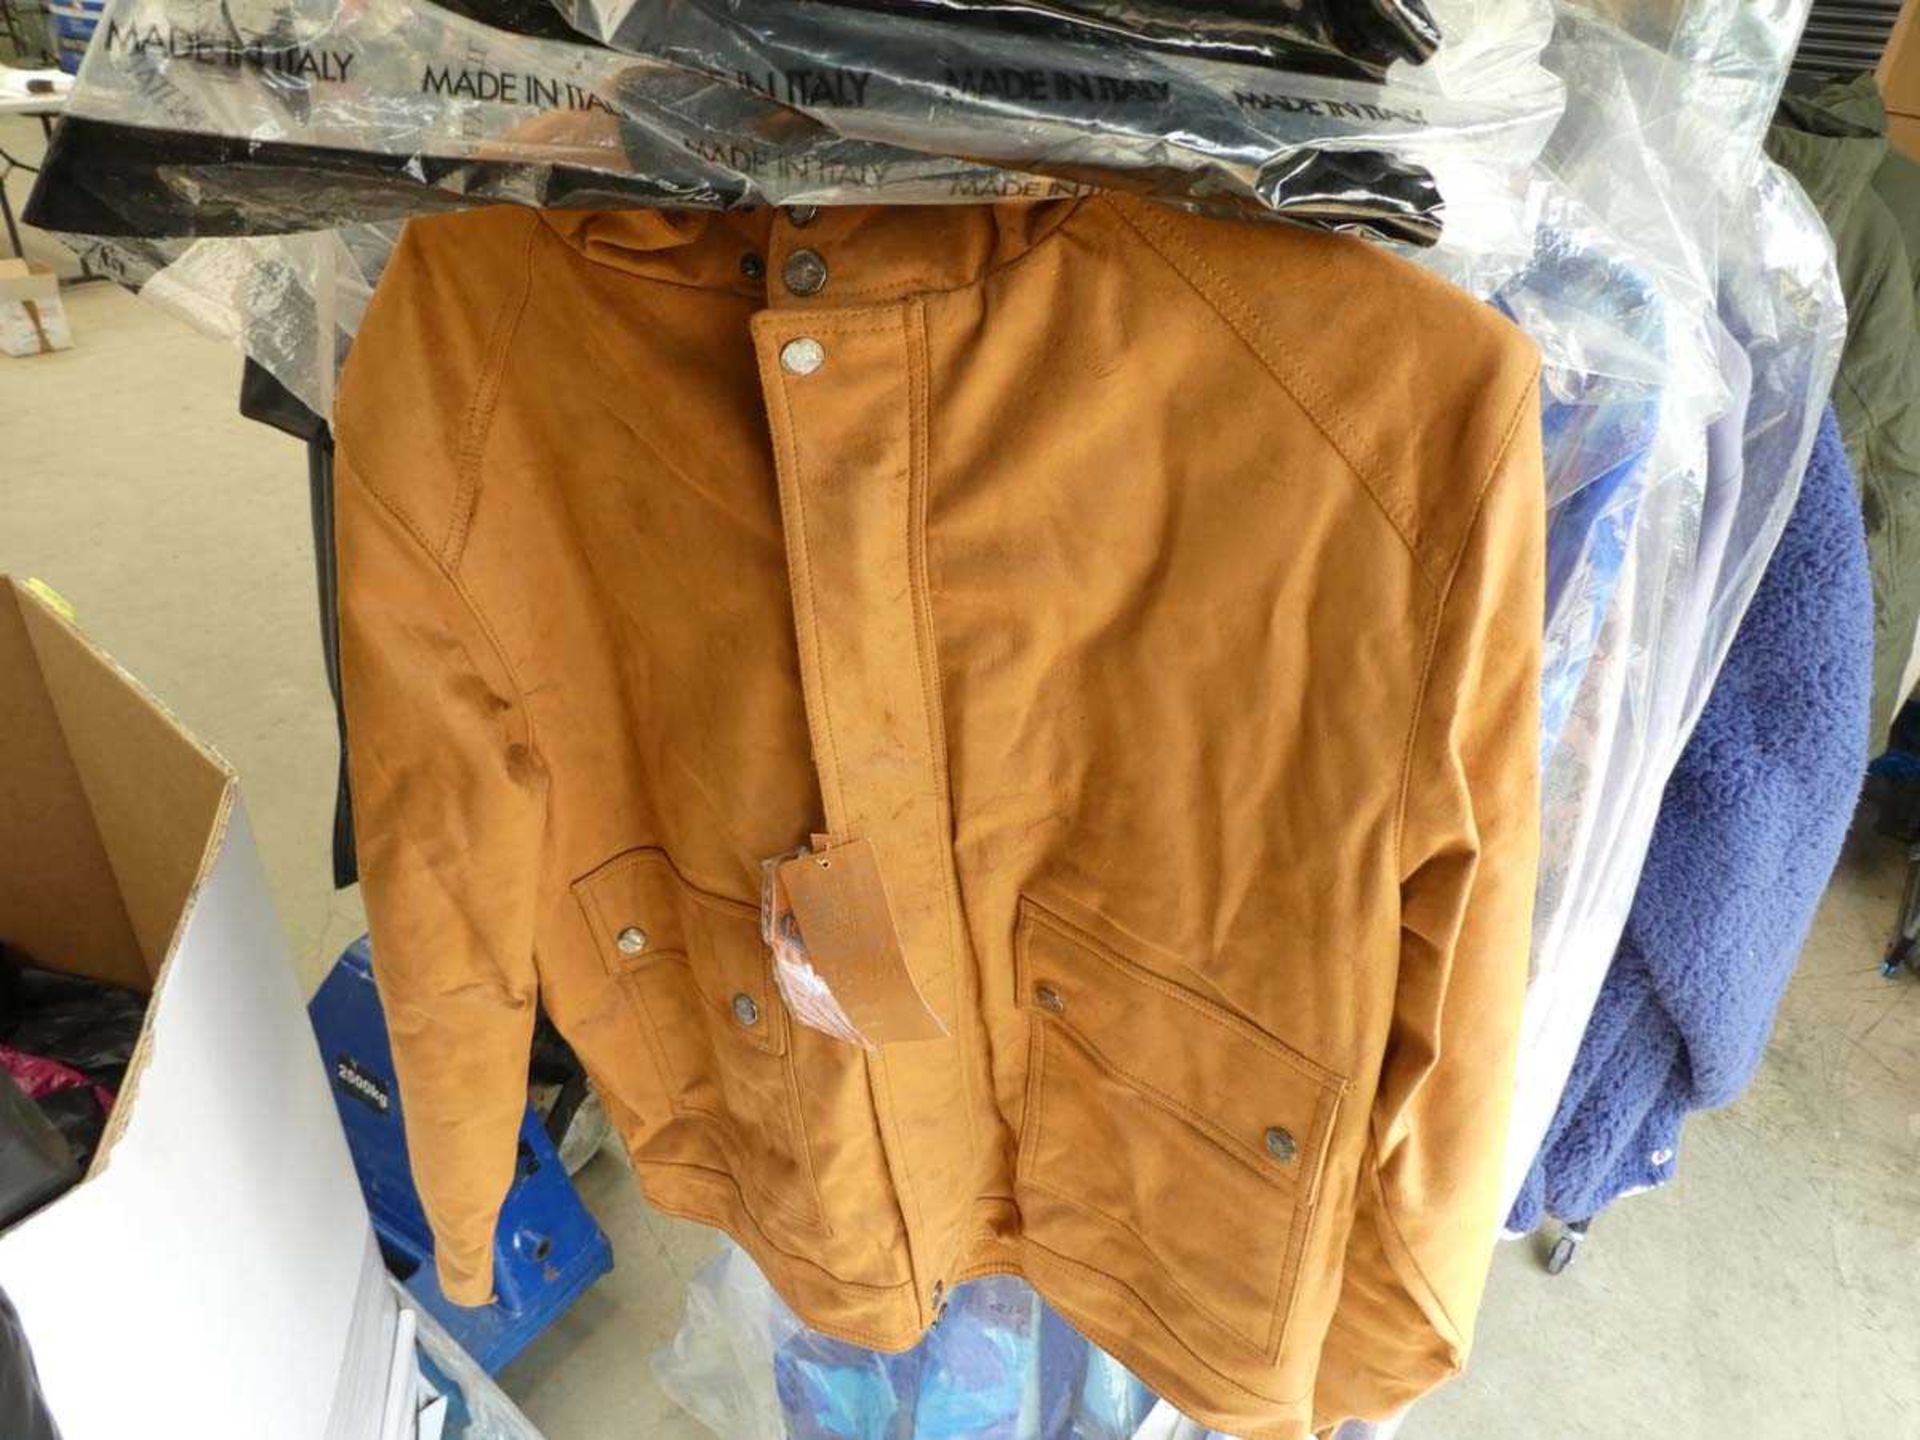 Reporgage brown suede jacket